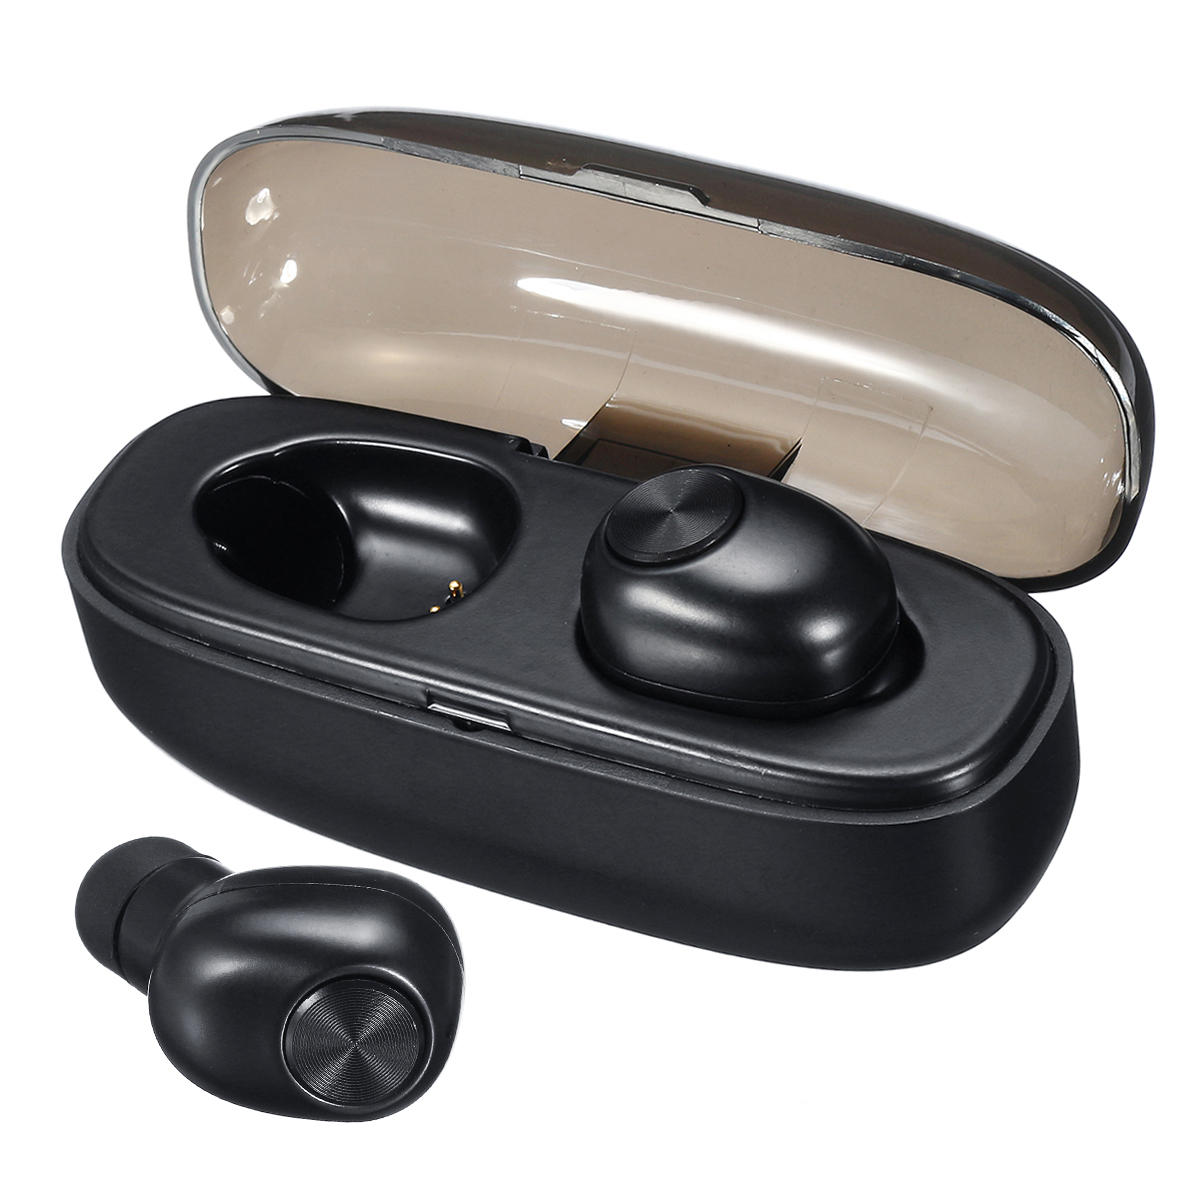 [Bluetooth 5.0] TWS Draadloze oordopjes Ruisonderdrukking Bilaterale gesprekken IPX5 Waterdichte oor